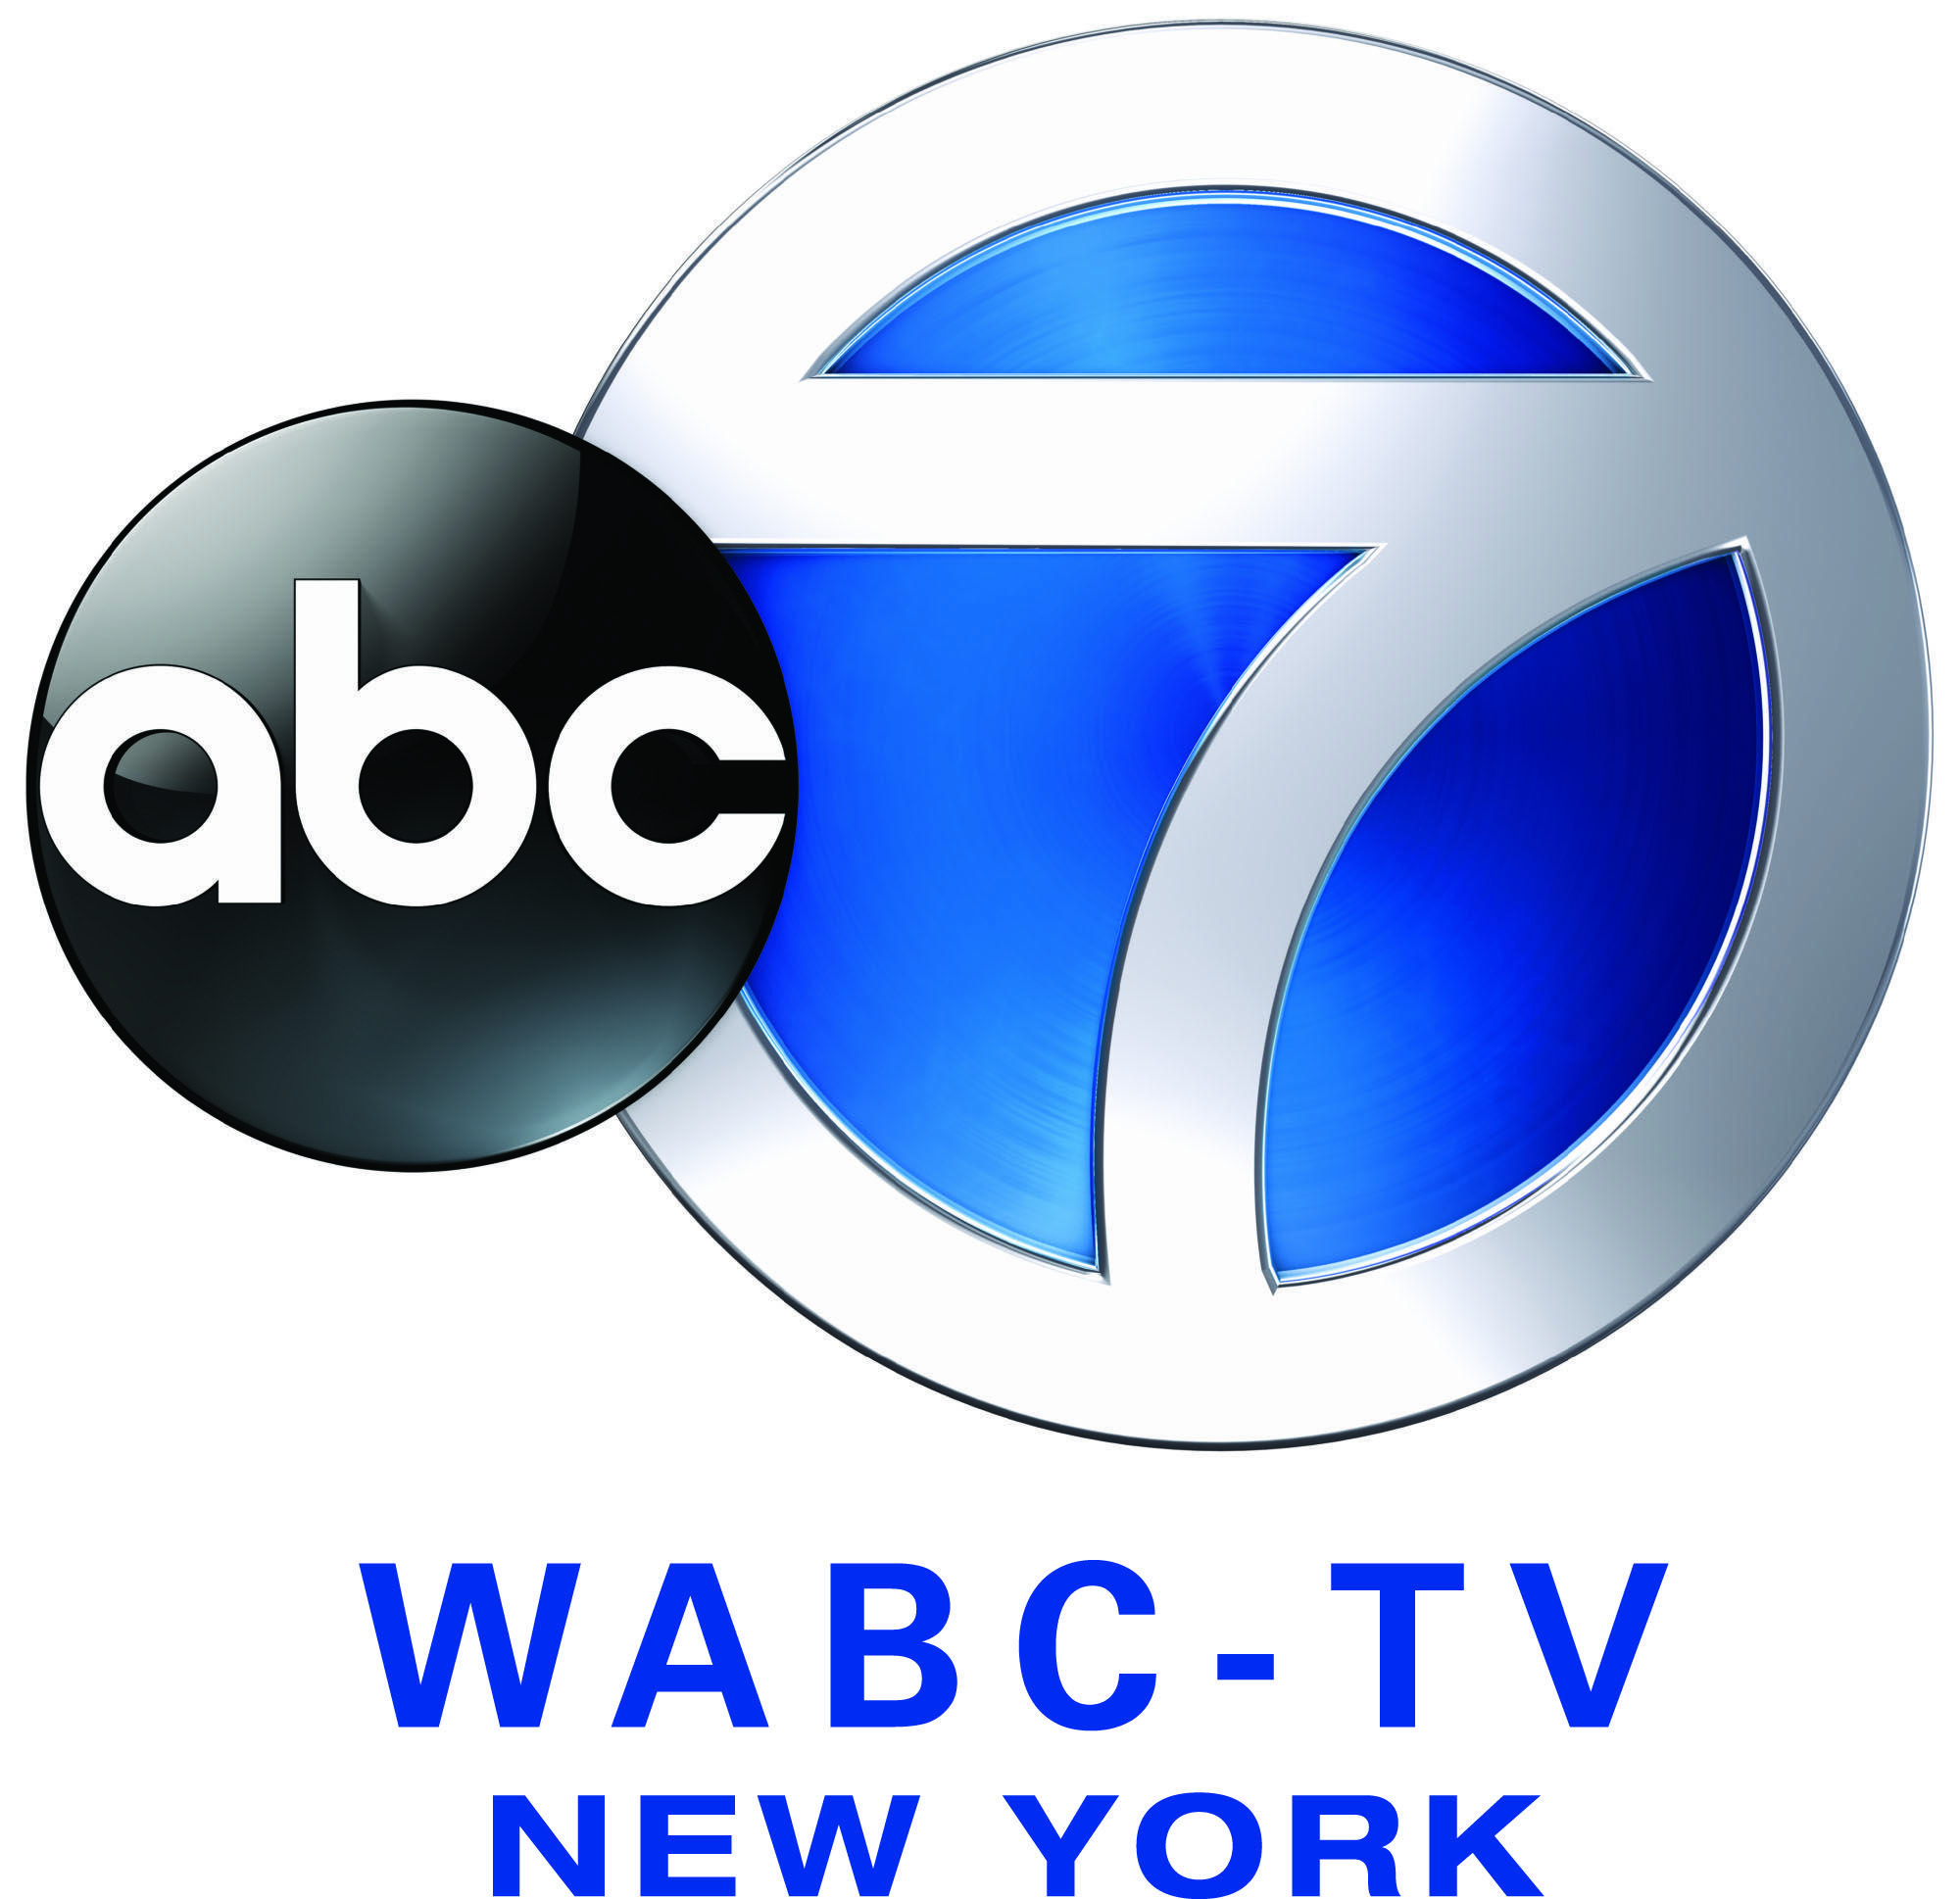 WABC Logo - Image - ABC7 WABC TV CMYK.jpg | Logopedia | FANDOM powered by Wikia